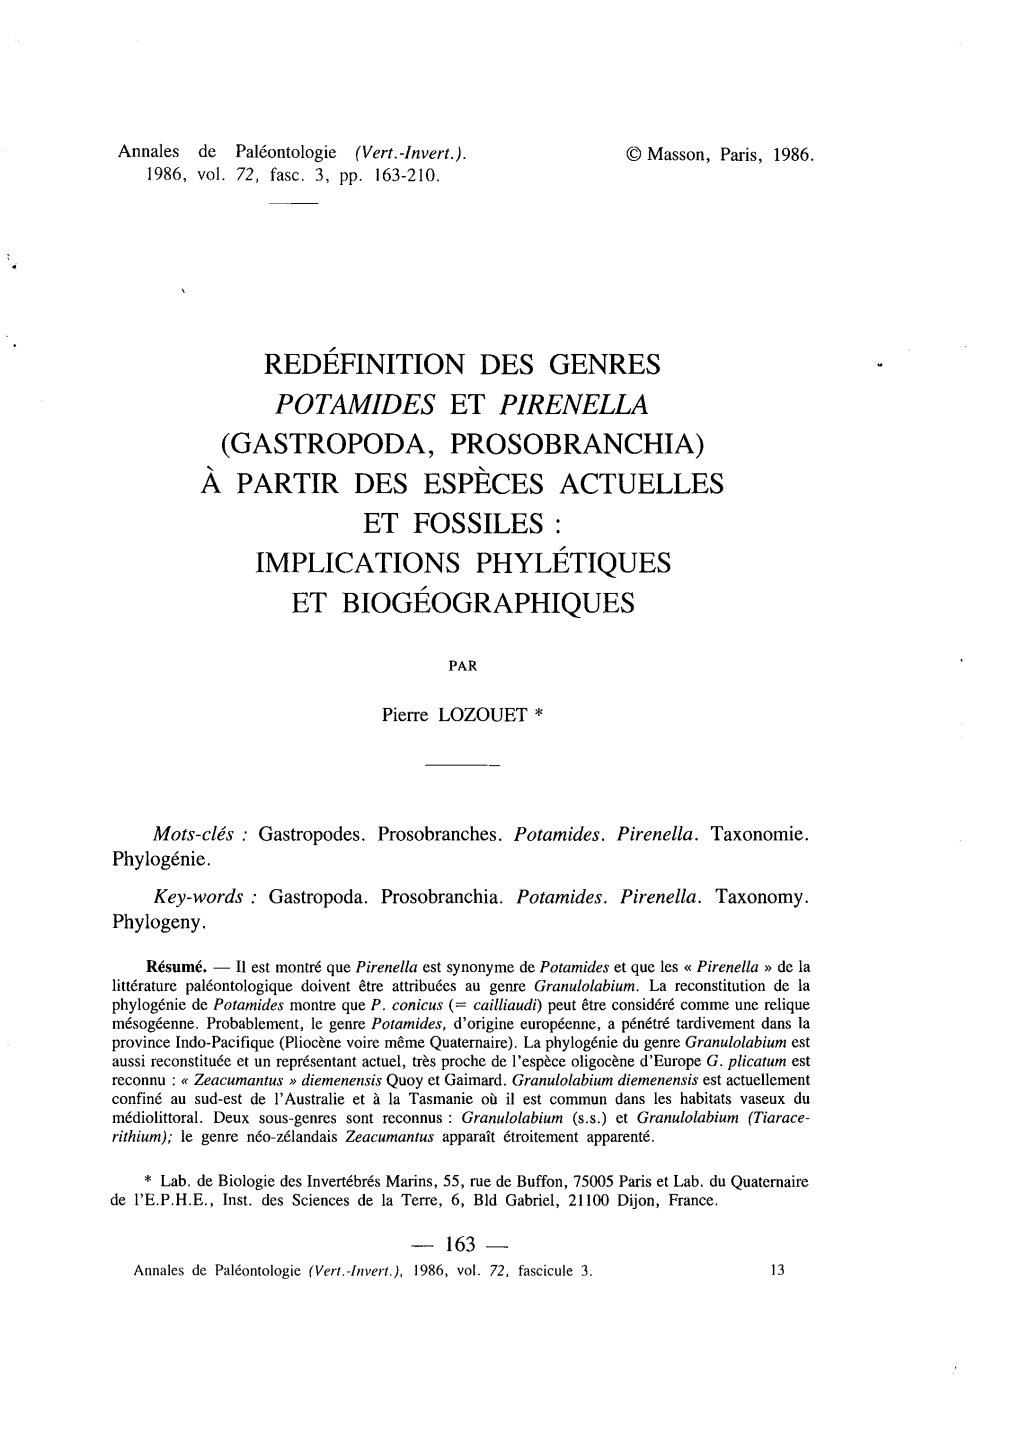 Potamides Et Pirenella (Gastropoda, Prosobranchia) À Partir Des Espèces Actuelles Et Fossiles : Implications Phylétiques Et Biogéographiques